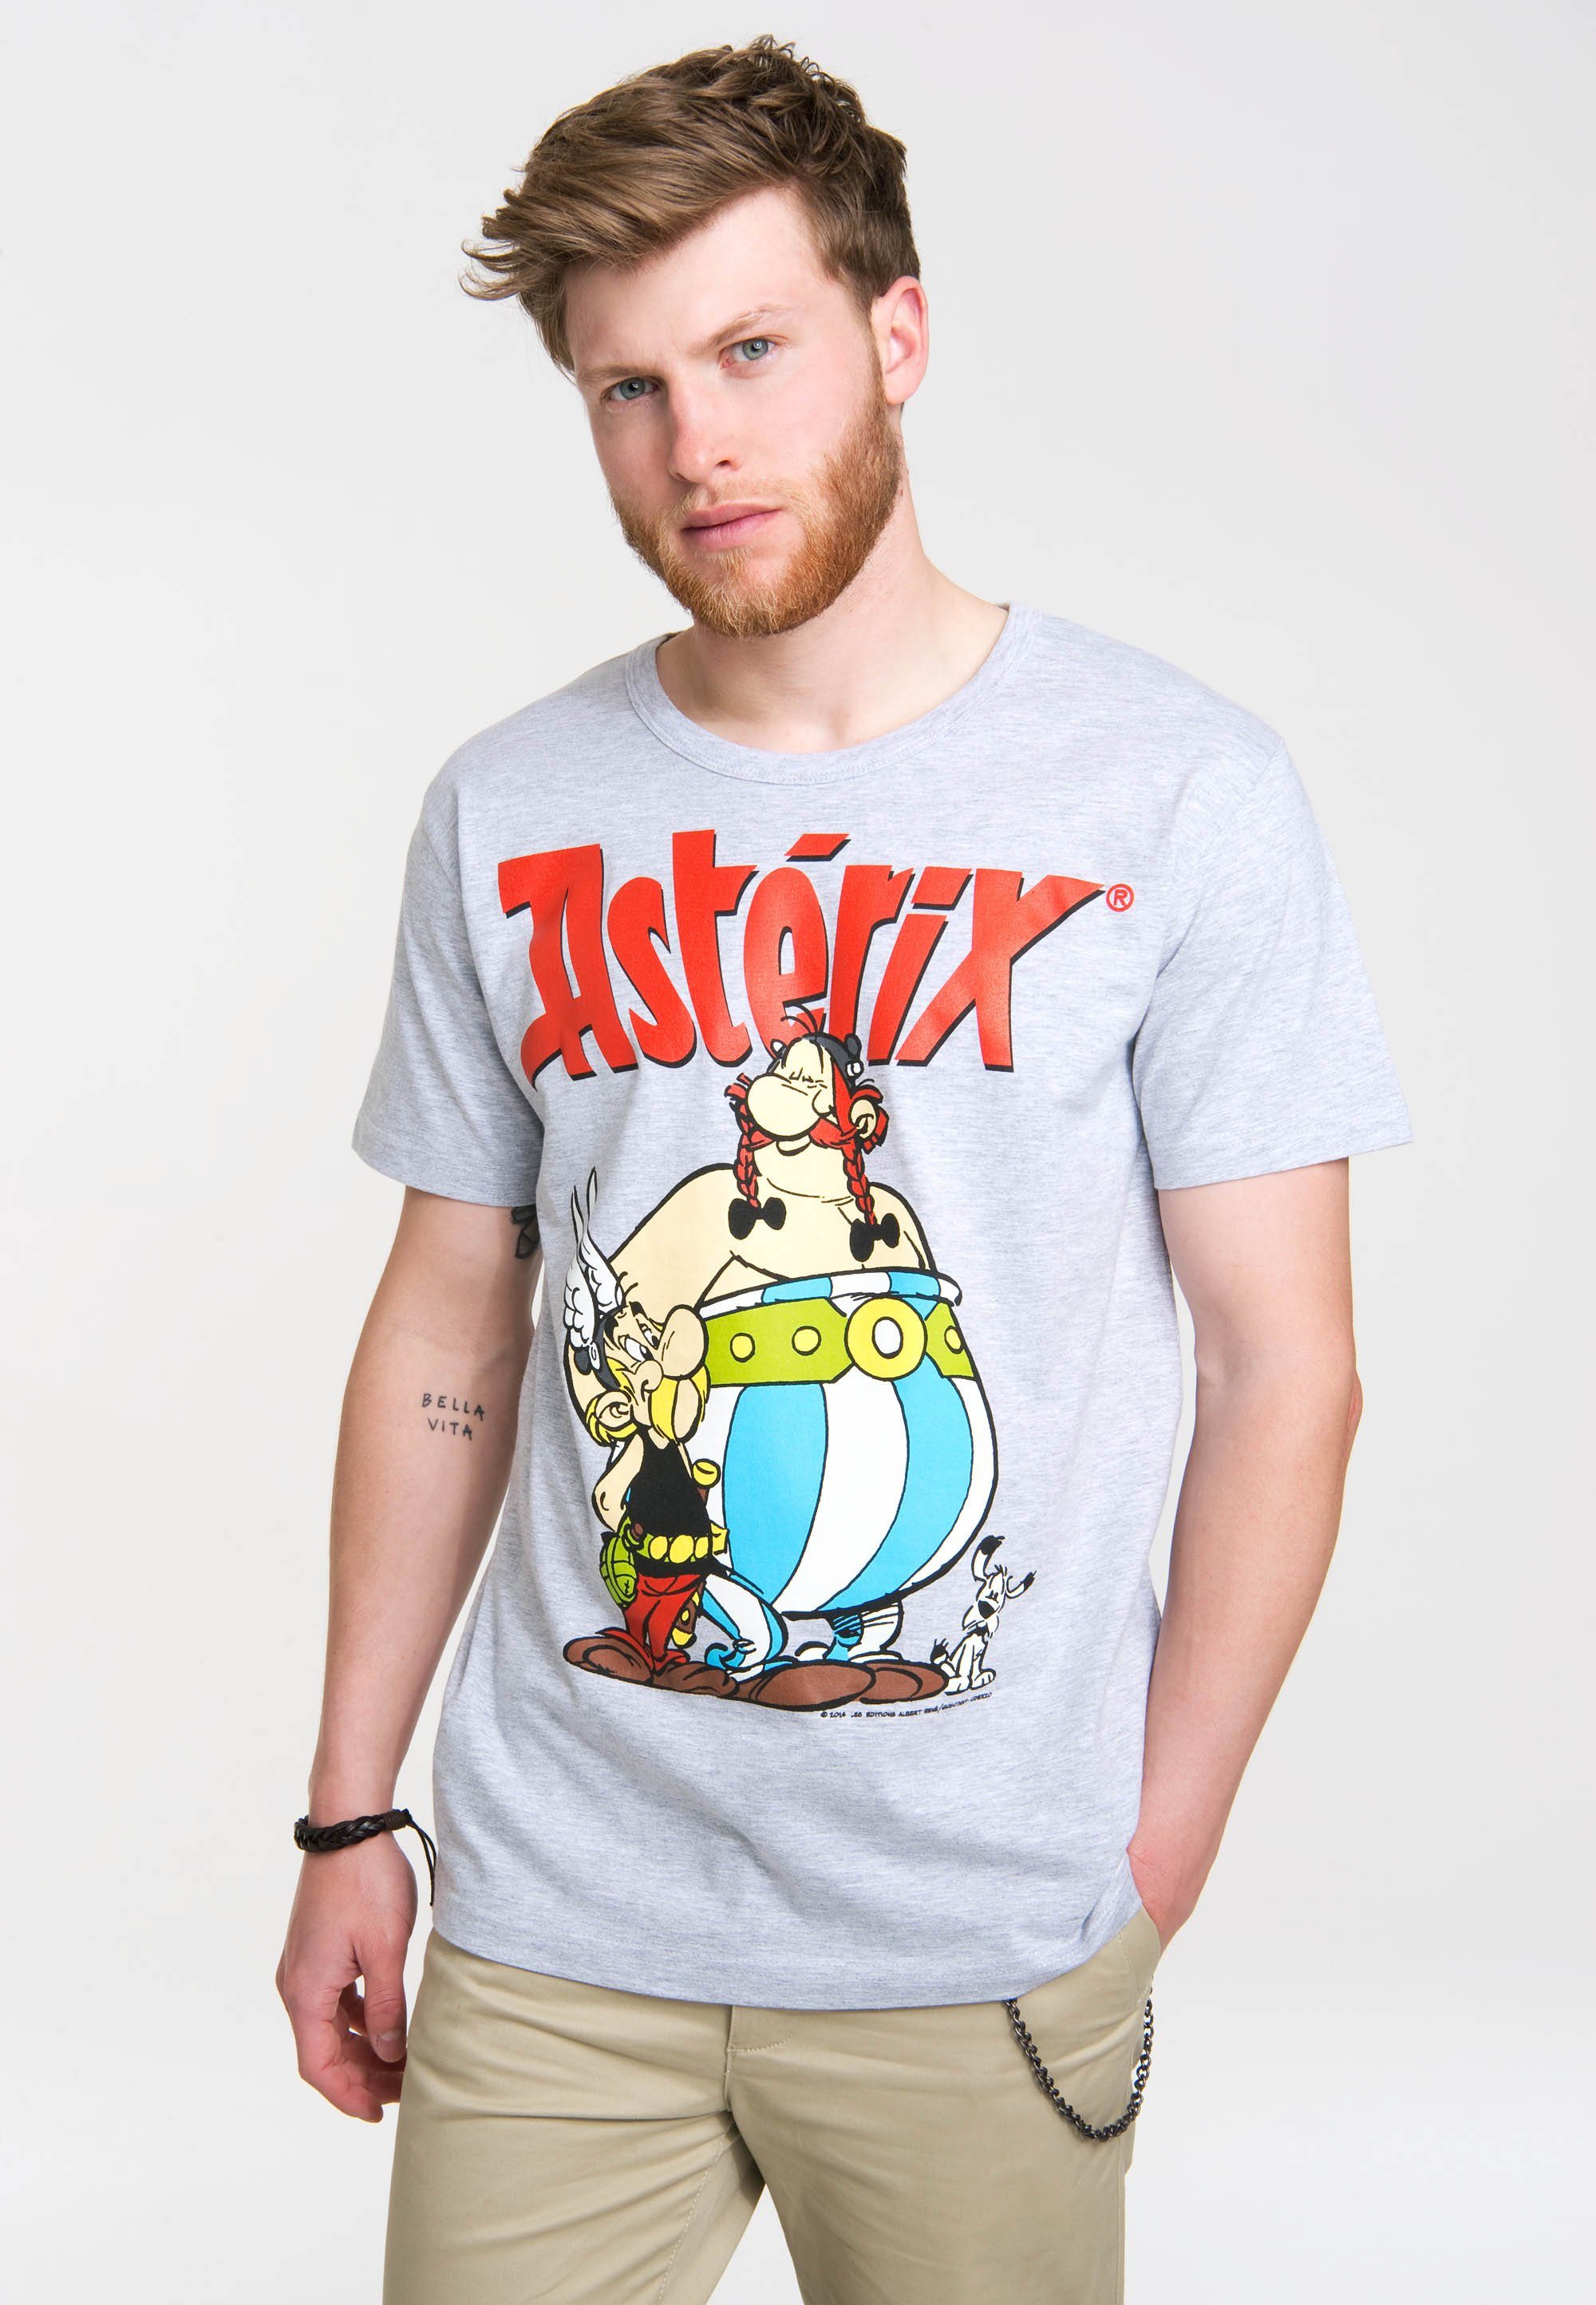 LOGOSHIRT T-Shirt Asterix & Obelix mit coolem Retro-Print